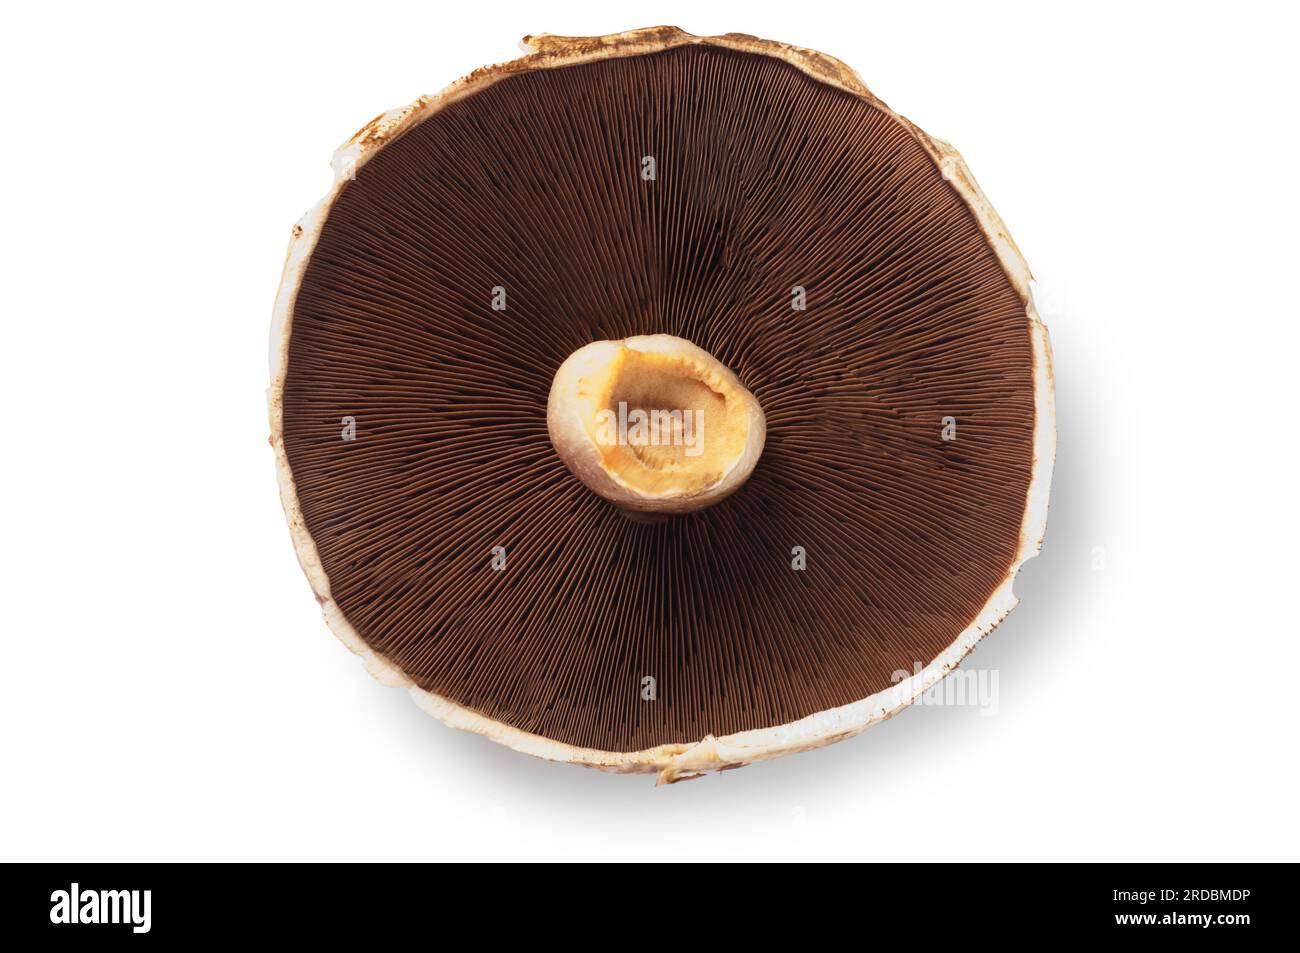 Studio-Aufnahme eines großen portobello-Pilzes, der vor weißem Hintergrund ausgeschnitten wurde - John Gollop Stockfoto